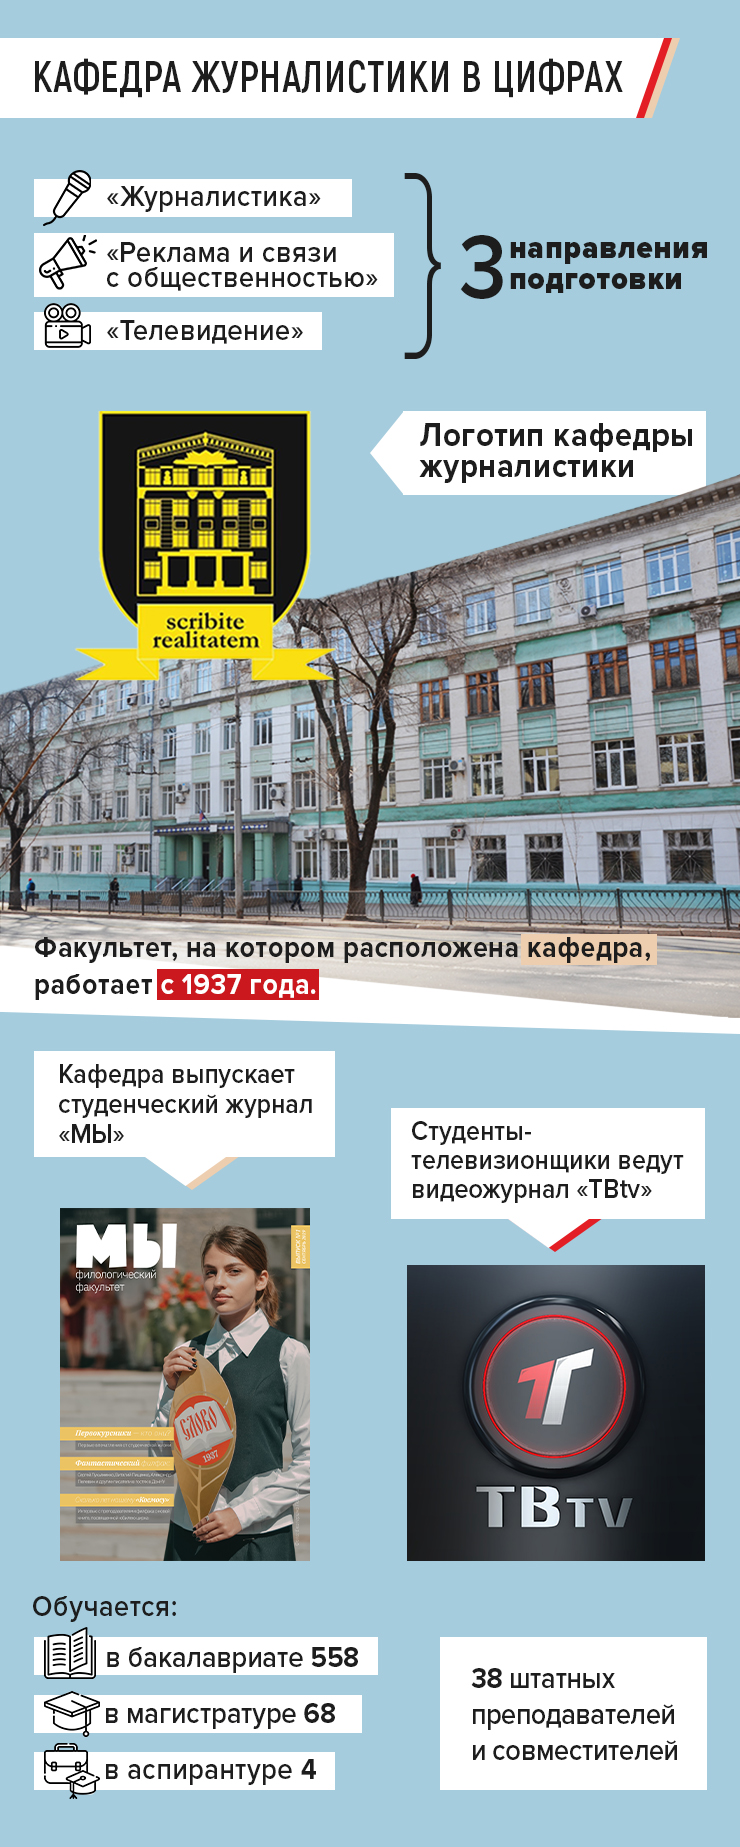 Медиакоммуникации | Санкт-Петербургский государственный университет